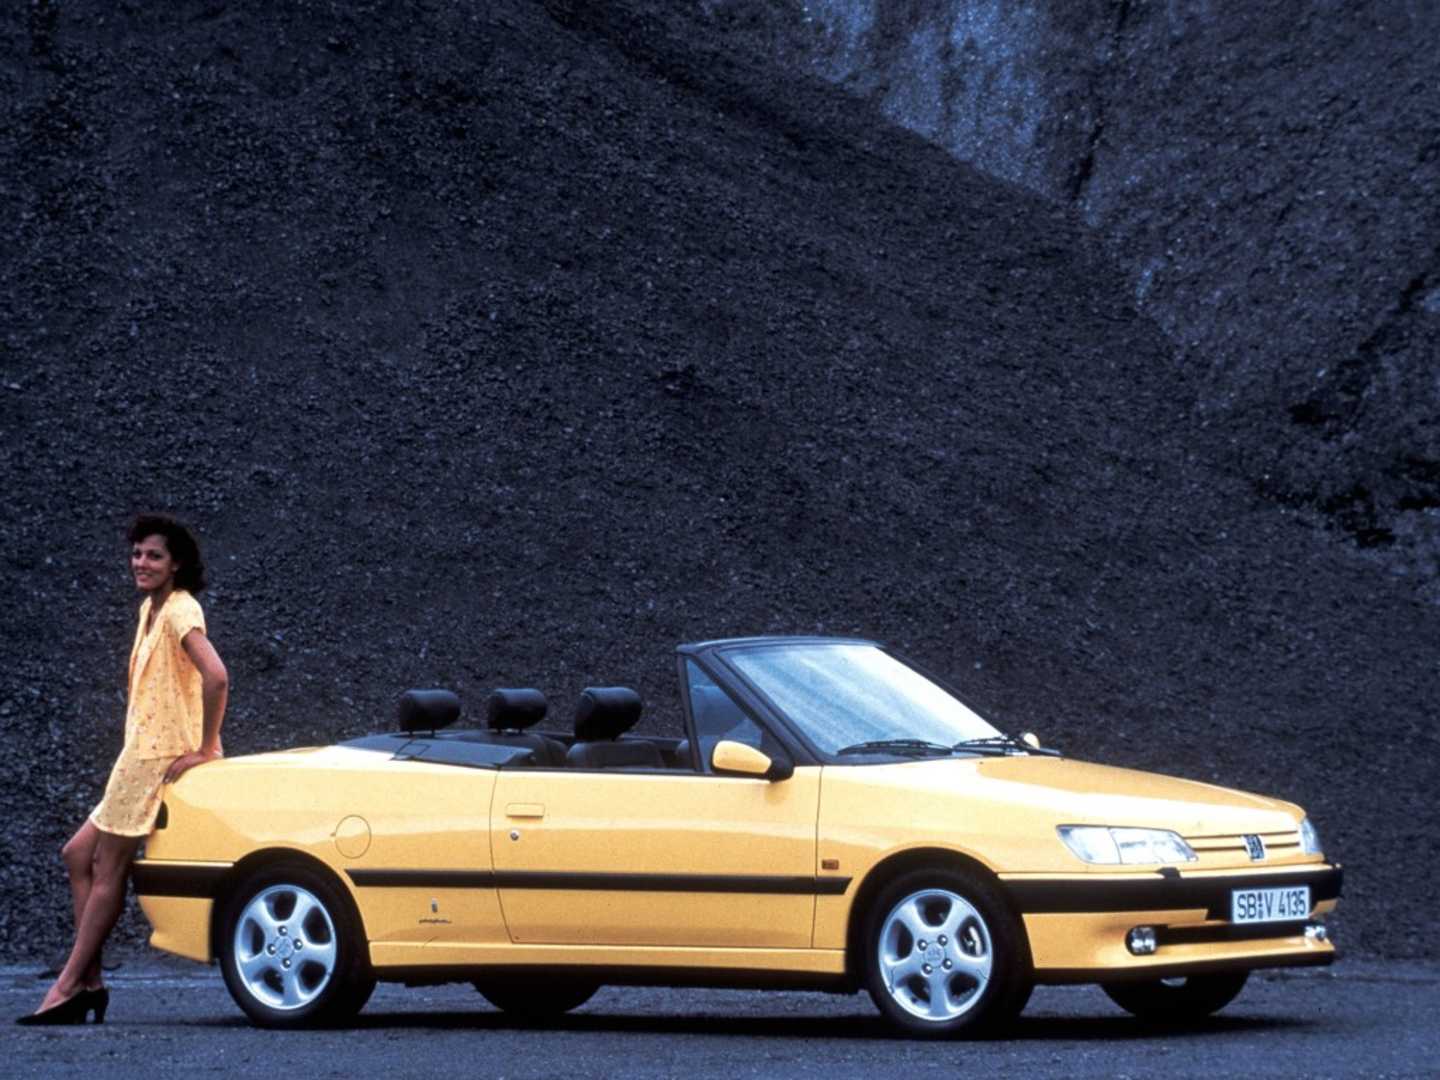 Peugeot 306 Cabriolet jaune, une dame est assise sur l'arrière du véhicule